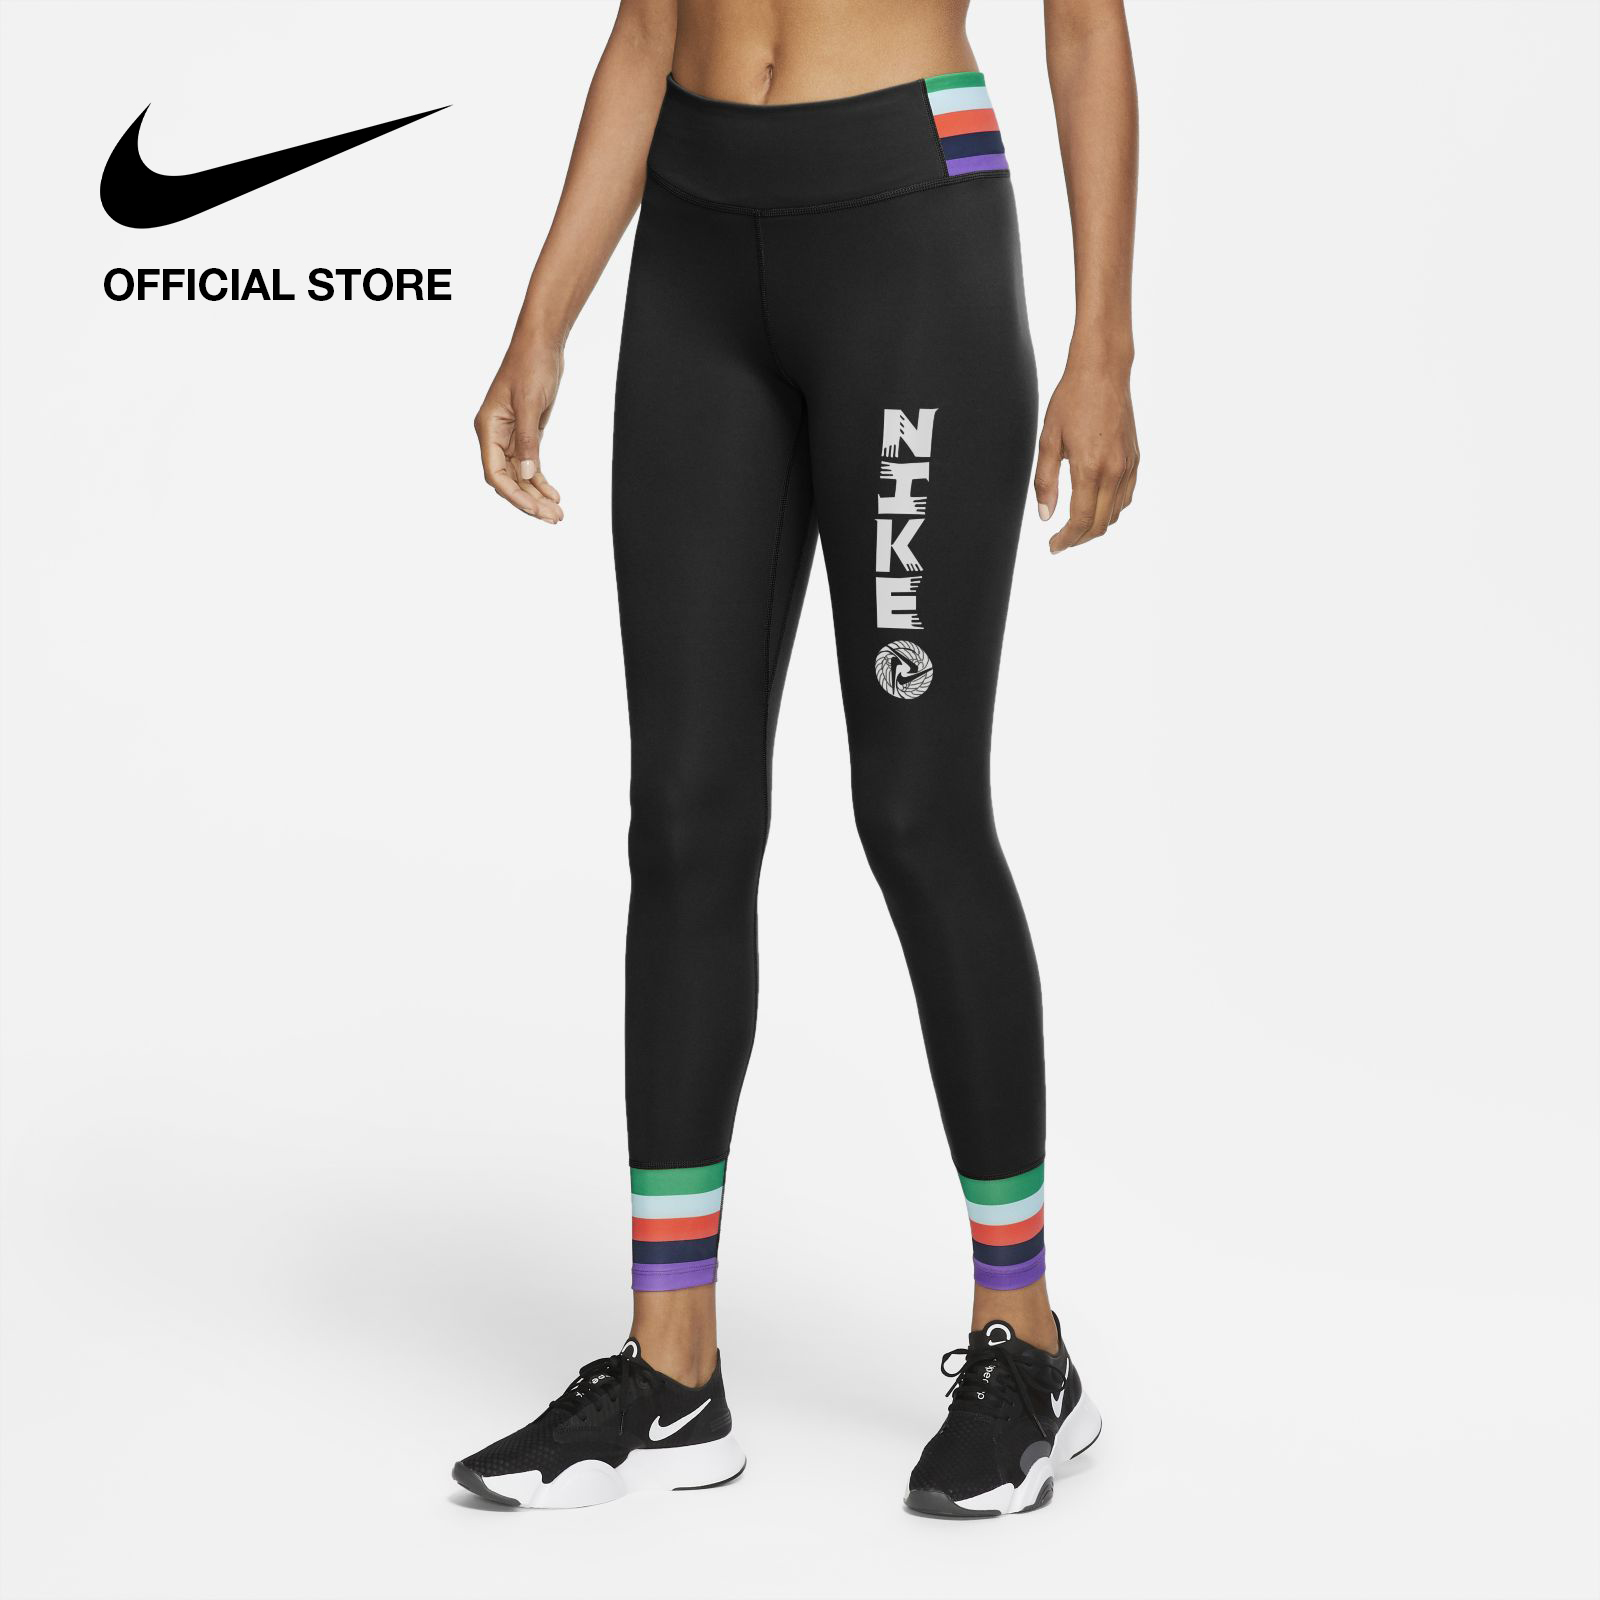 Nike Women's Icon Clash 7/8 Leggings - Black ไนกี้ เลกกิ้งผู้หญิง 7/8 ส่วน ไอค่อน แคลช - สีดำ